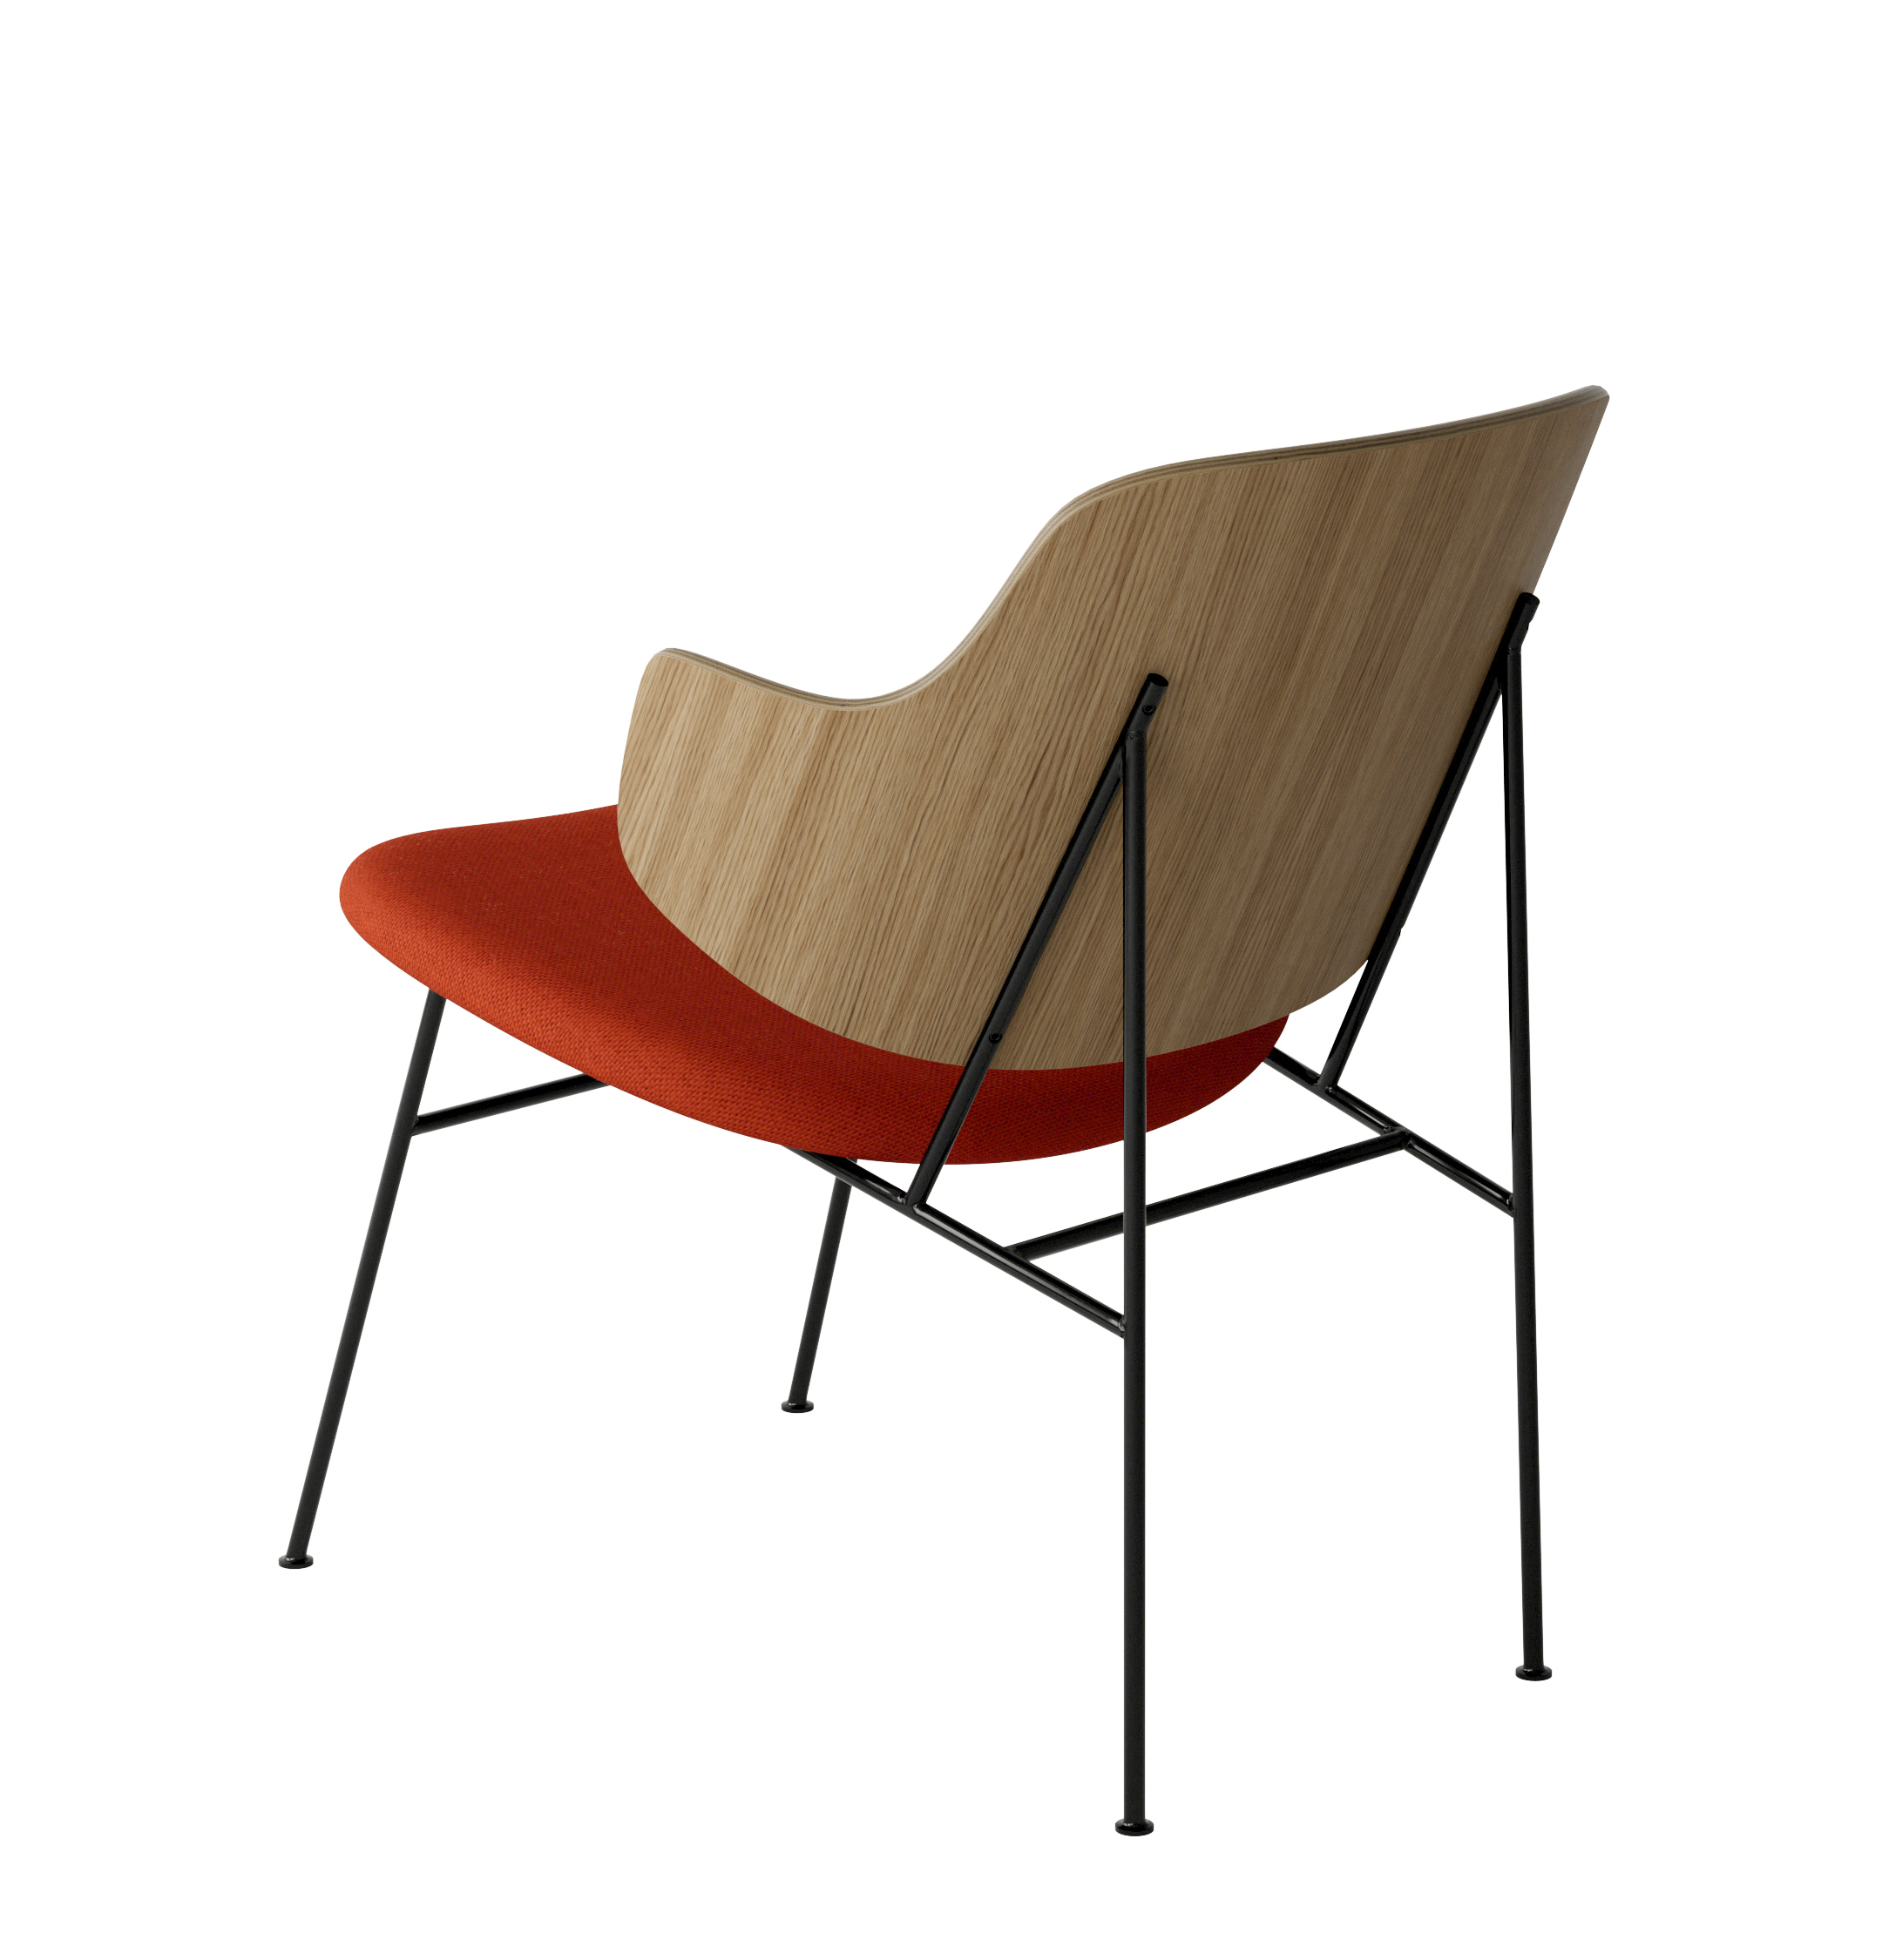 Menu - The Penguin fauteuil, zwart stalen frame, naturel eiken rugleuning, 0600 (Red)